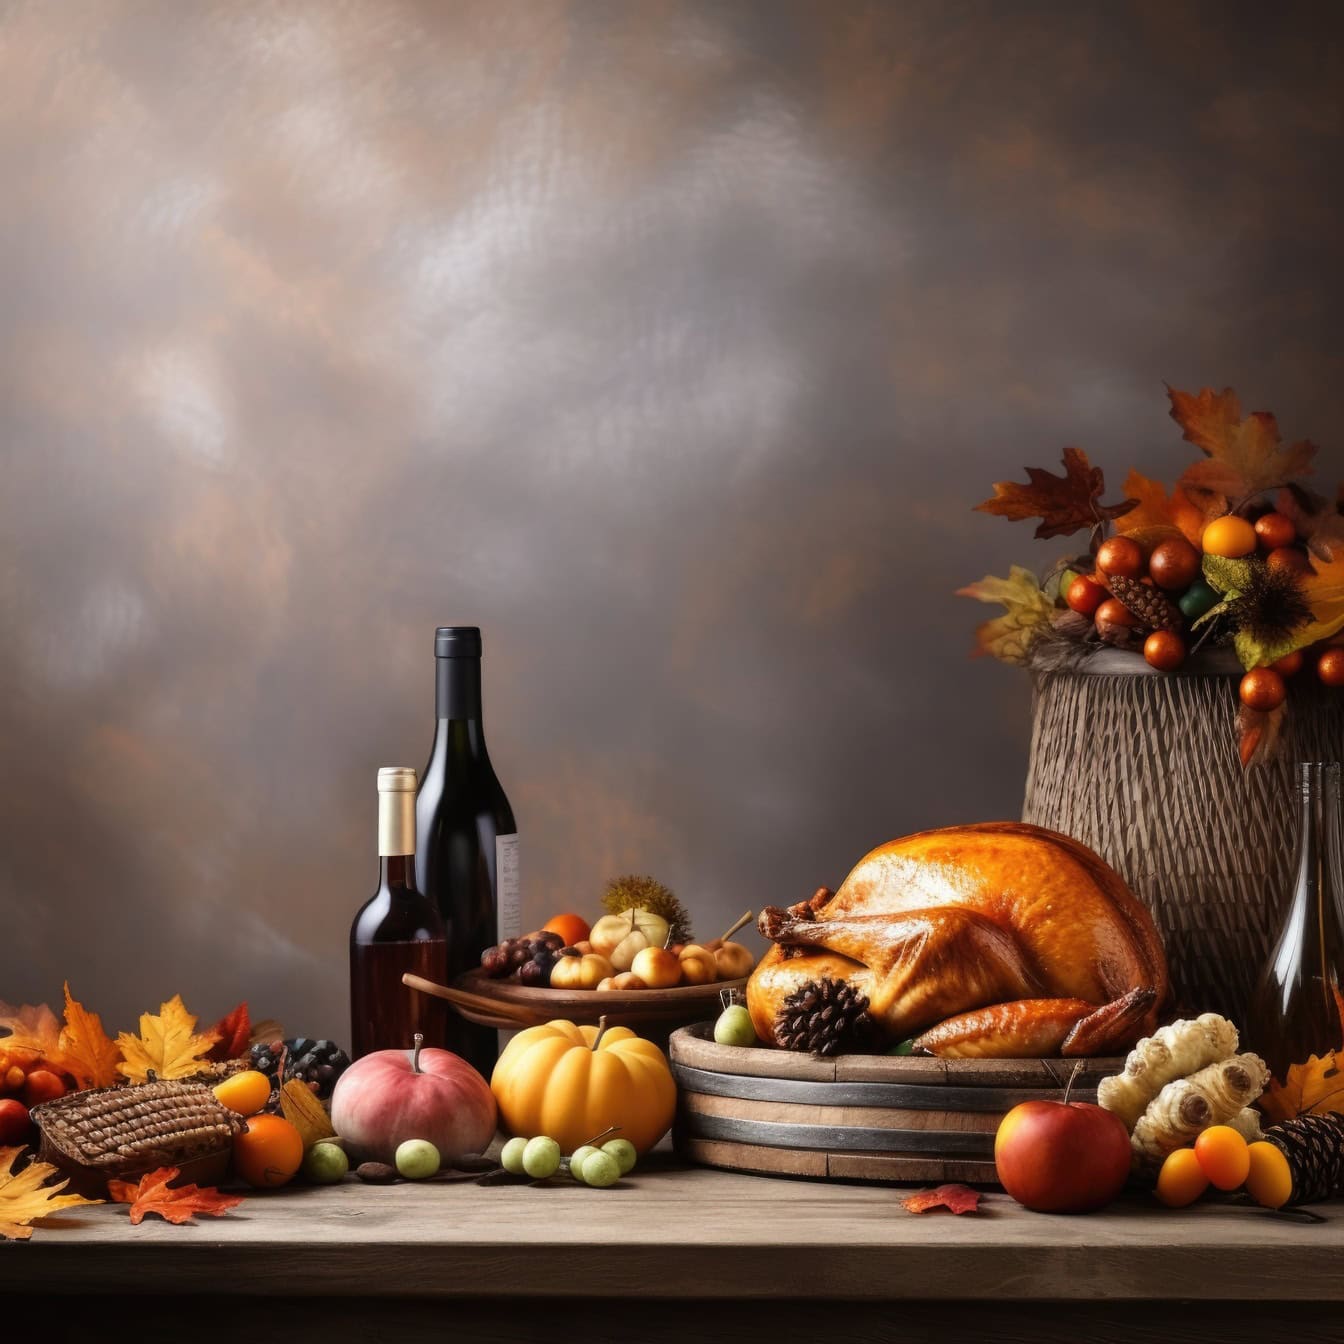 Τραπέζι με μπουκάλια φαγητού και κρασιού, μια απεικόνιση του δείπνου των ευχαριστιών